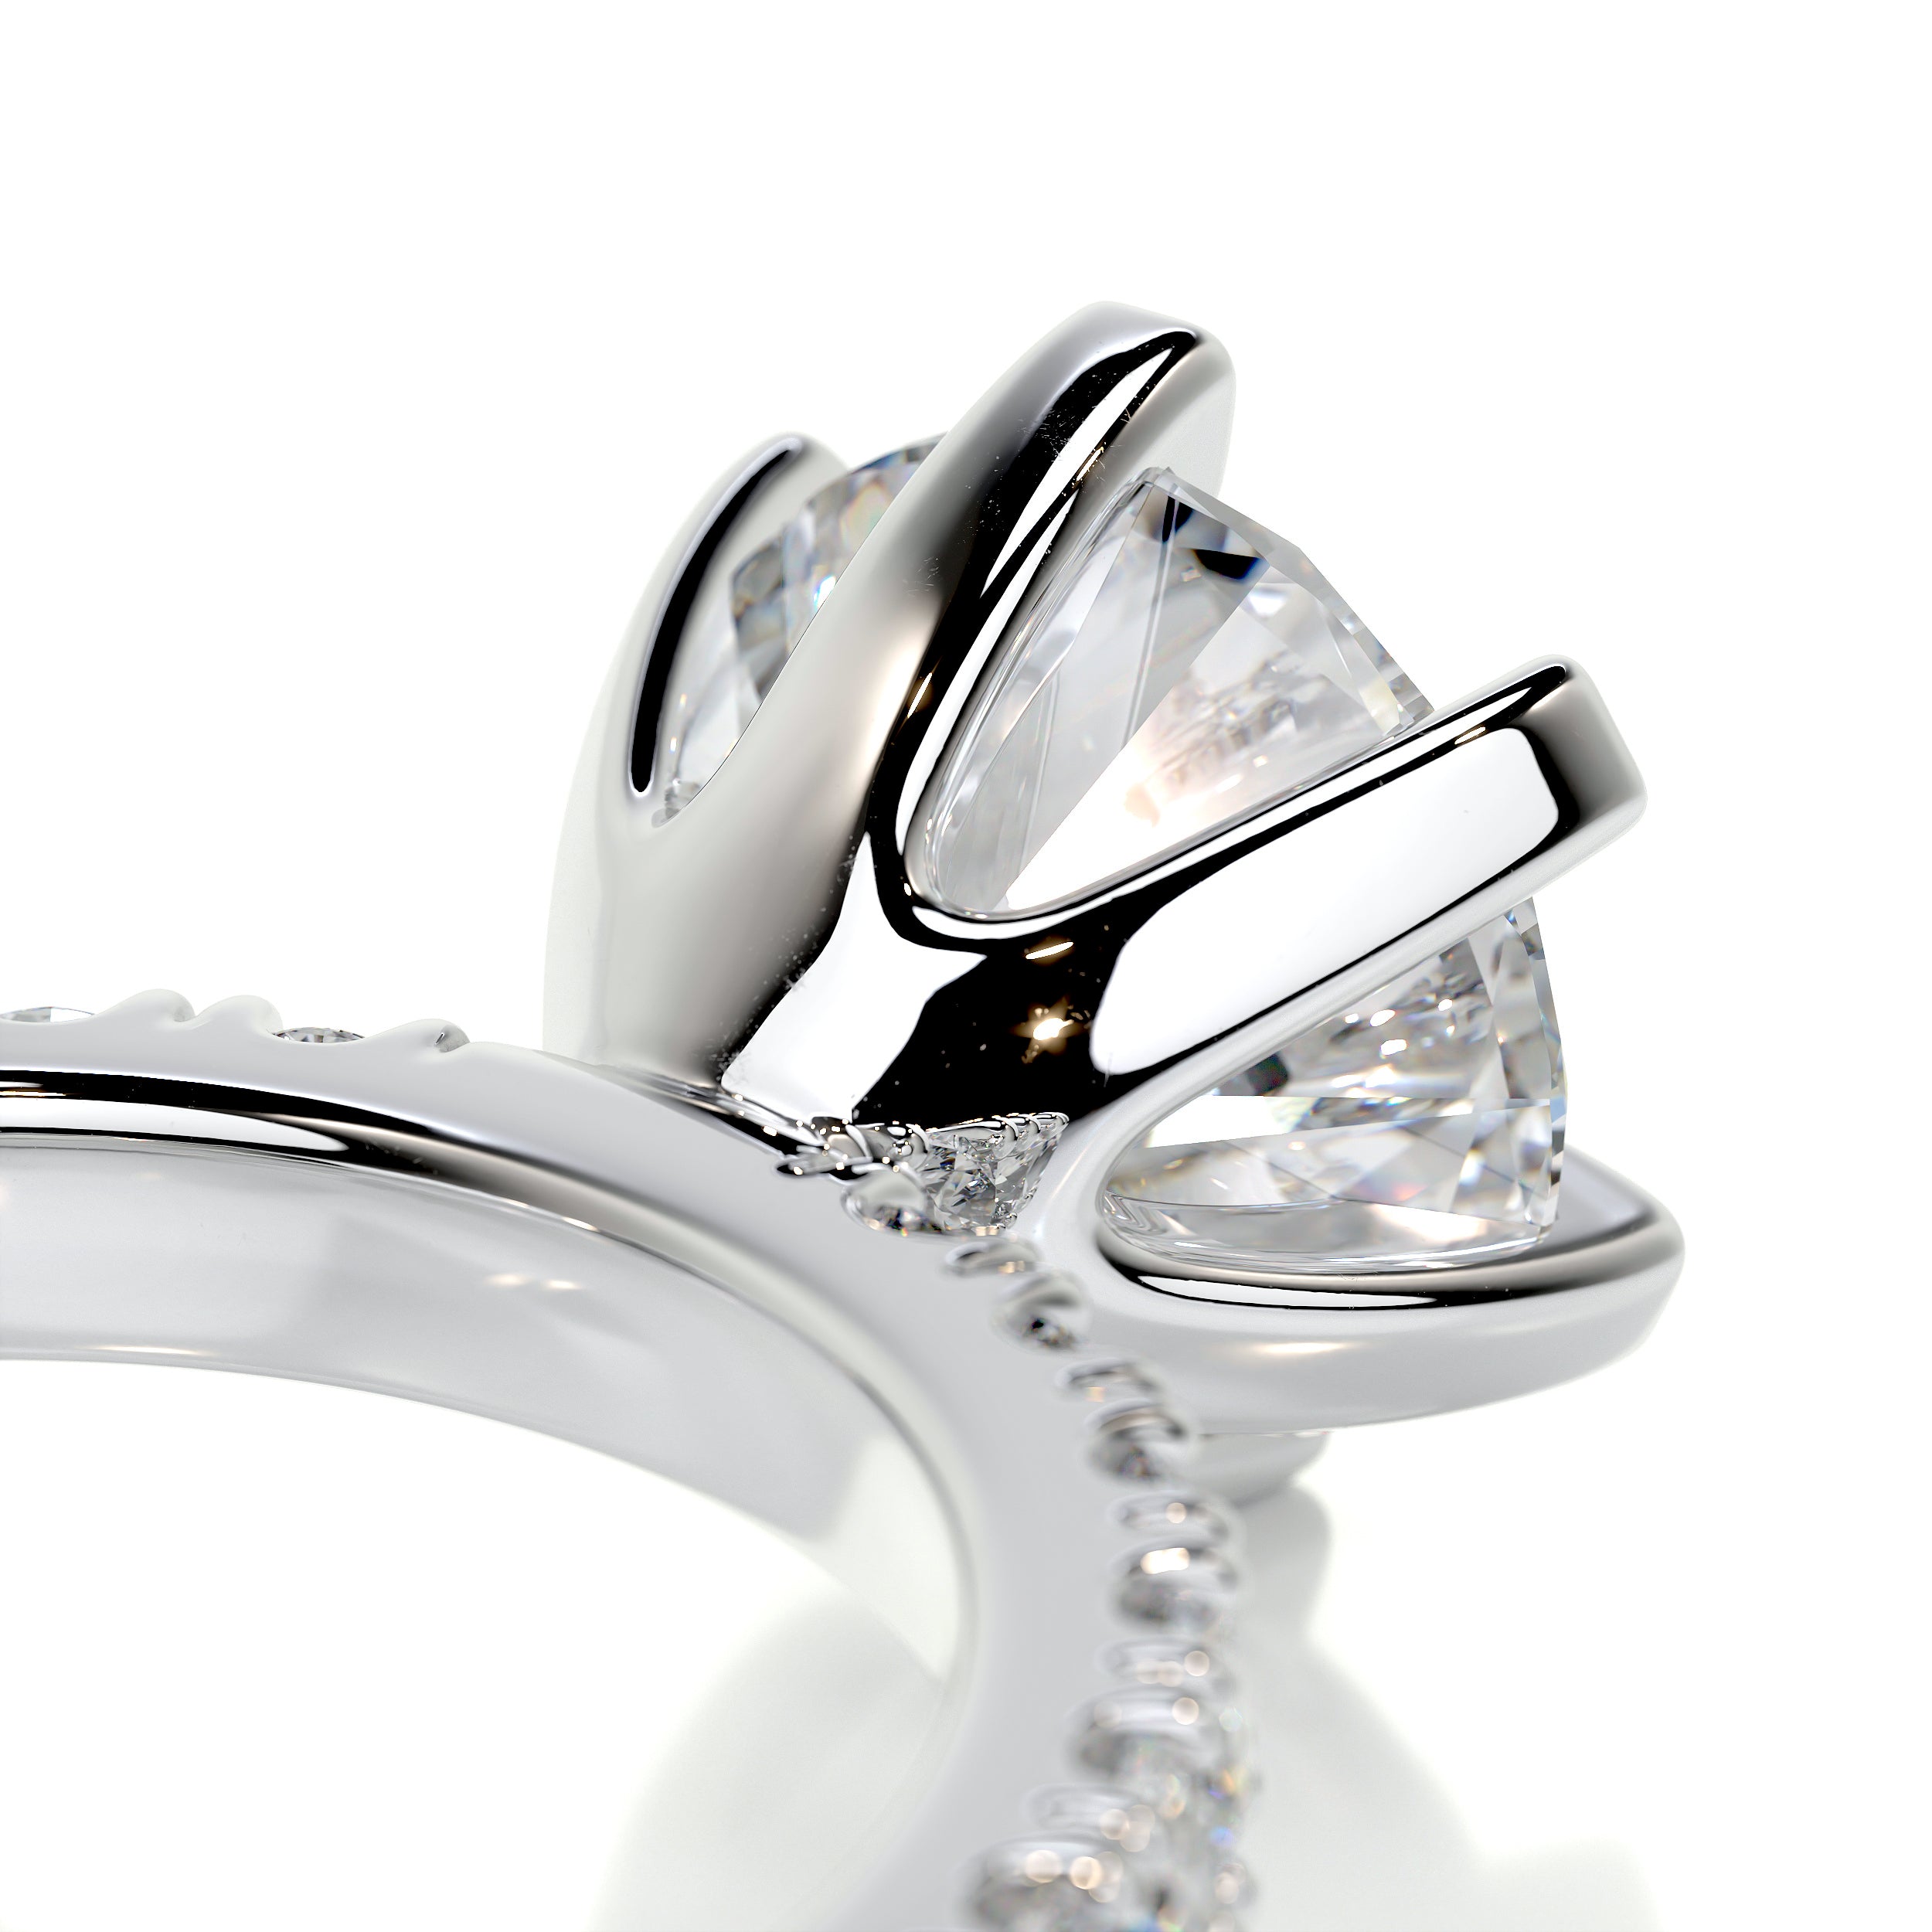 Veronica Diamond Engagement Ring   (2 Carat) -Platinum